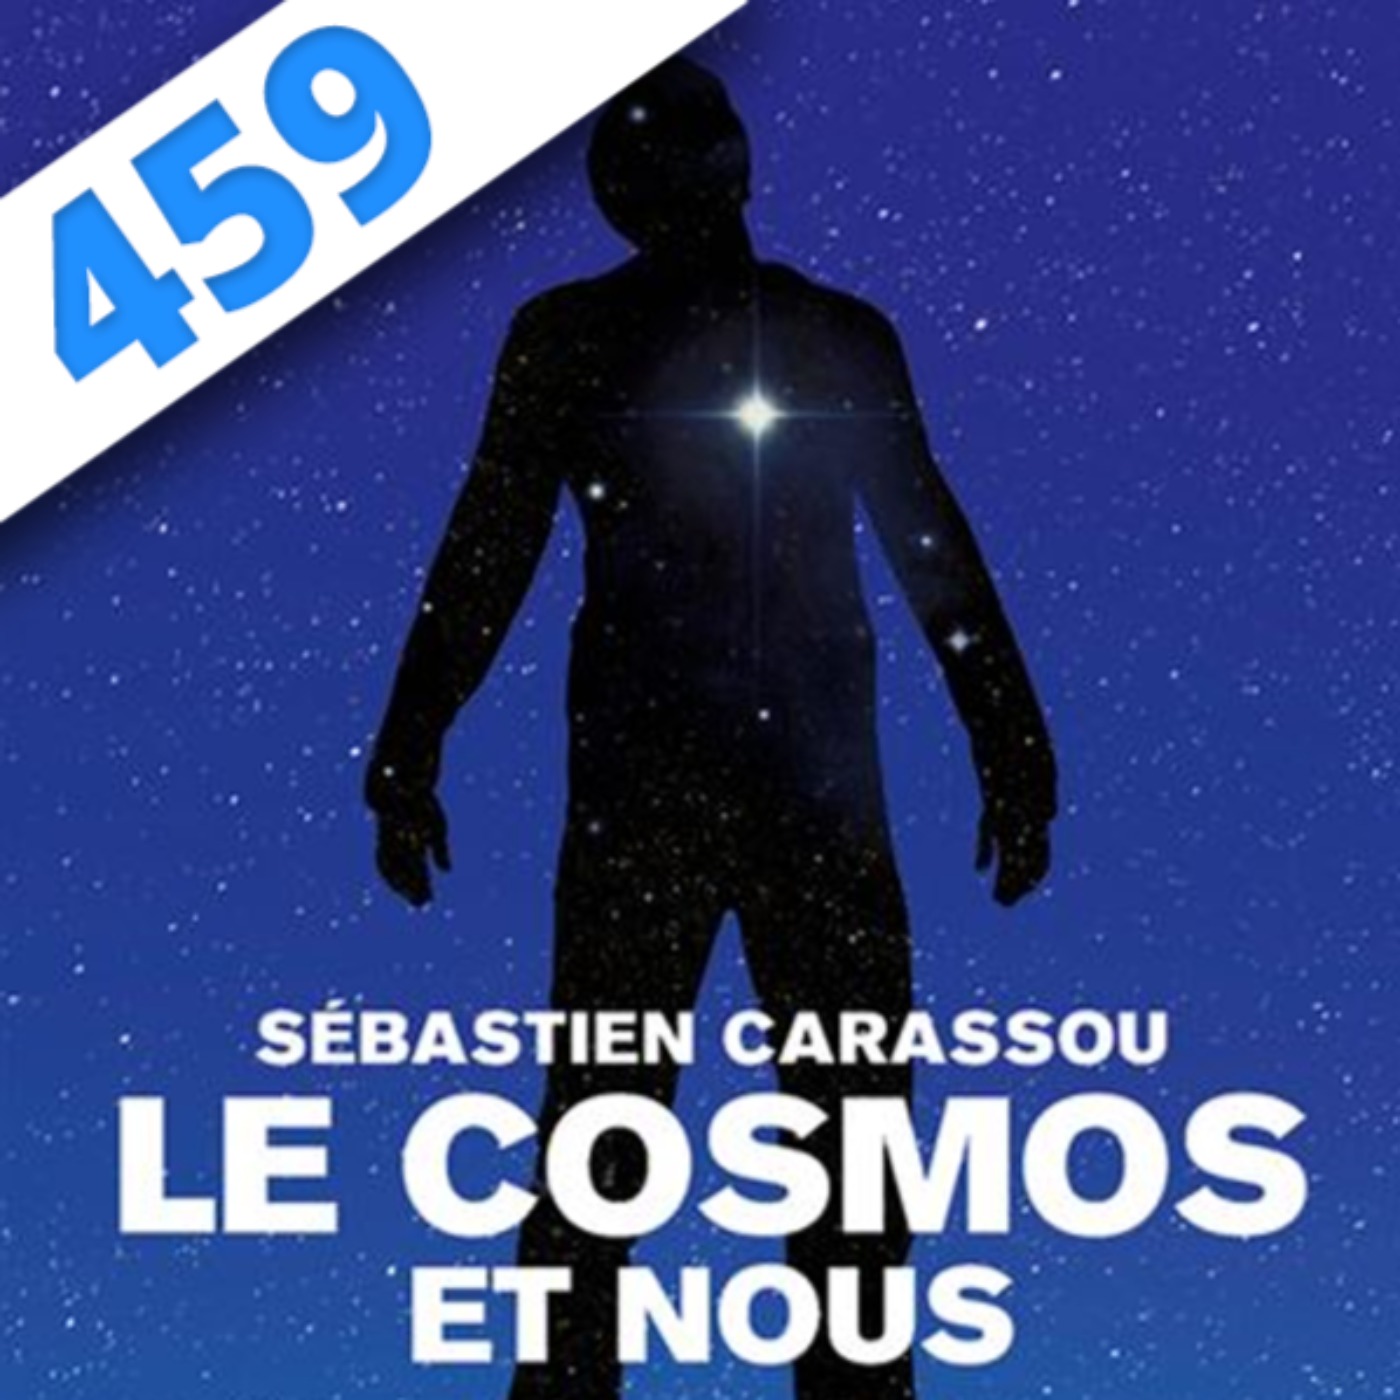 459 - Le Cosmos et Nous, avec Sébastien Carassou